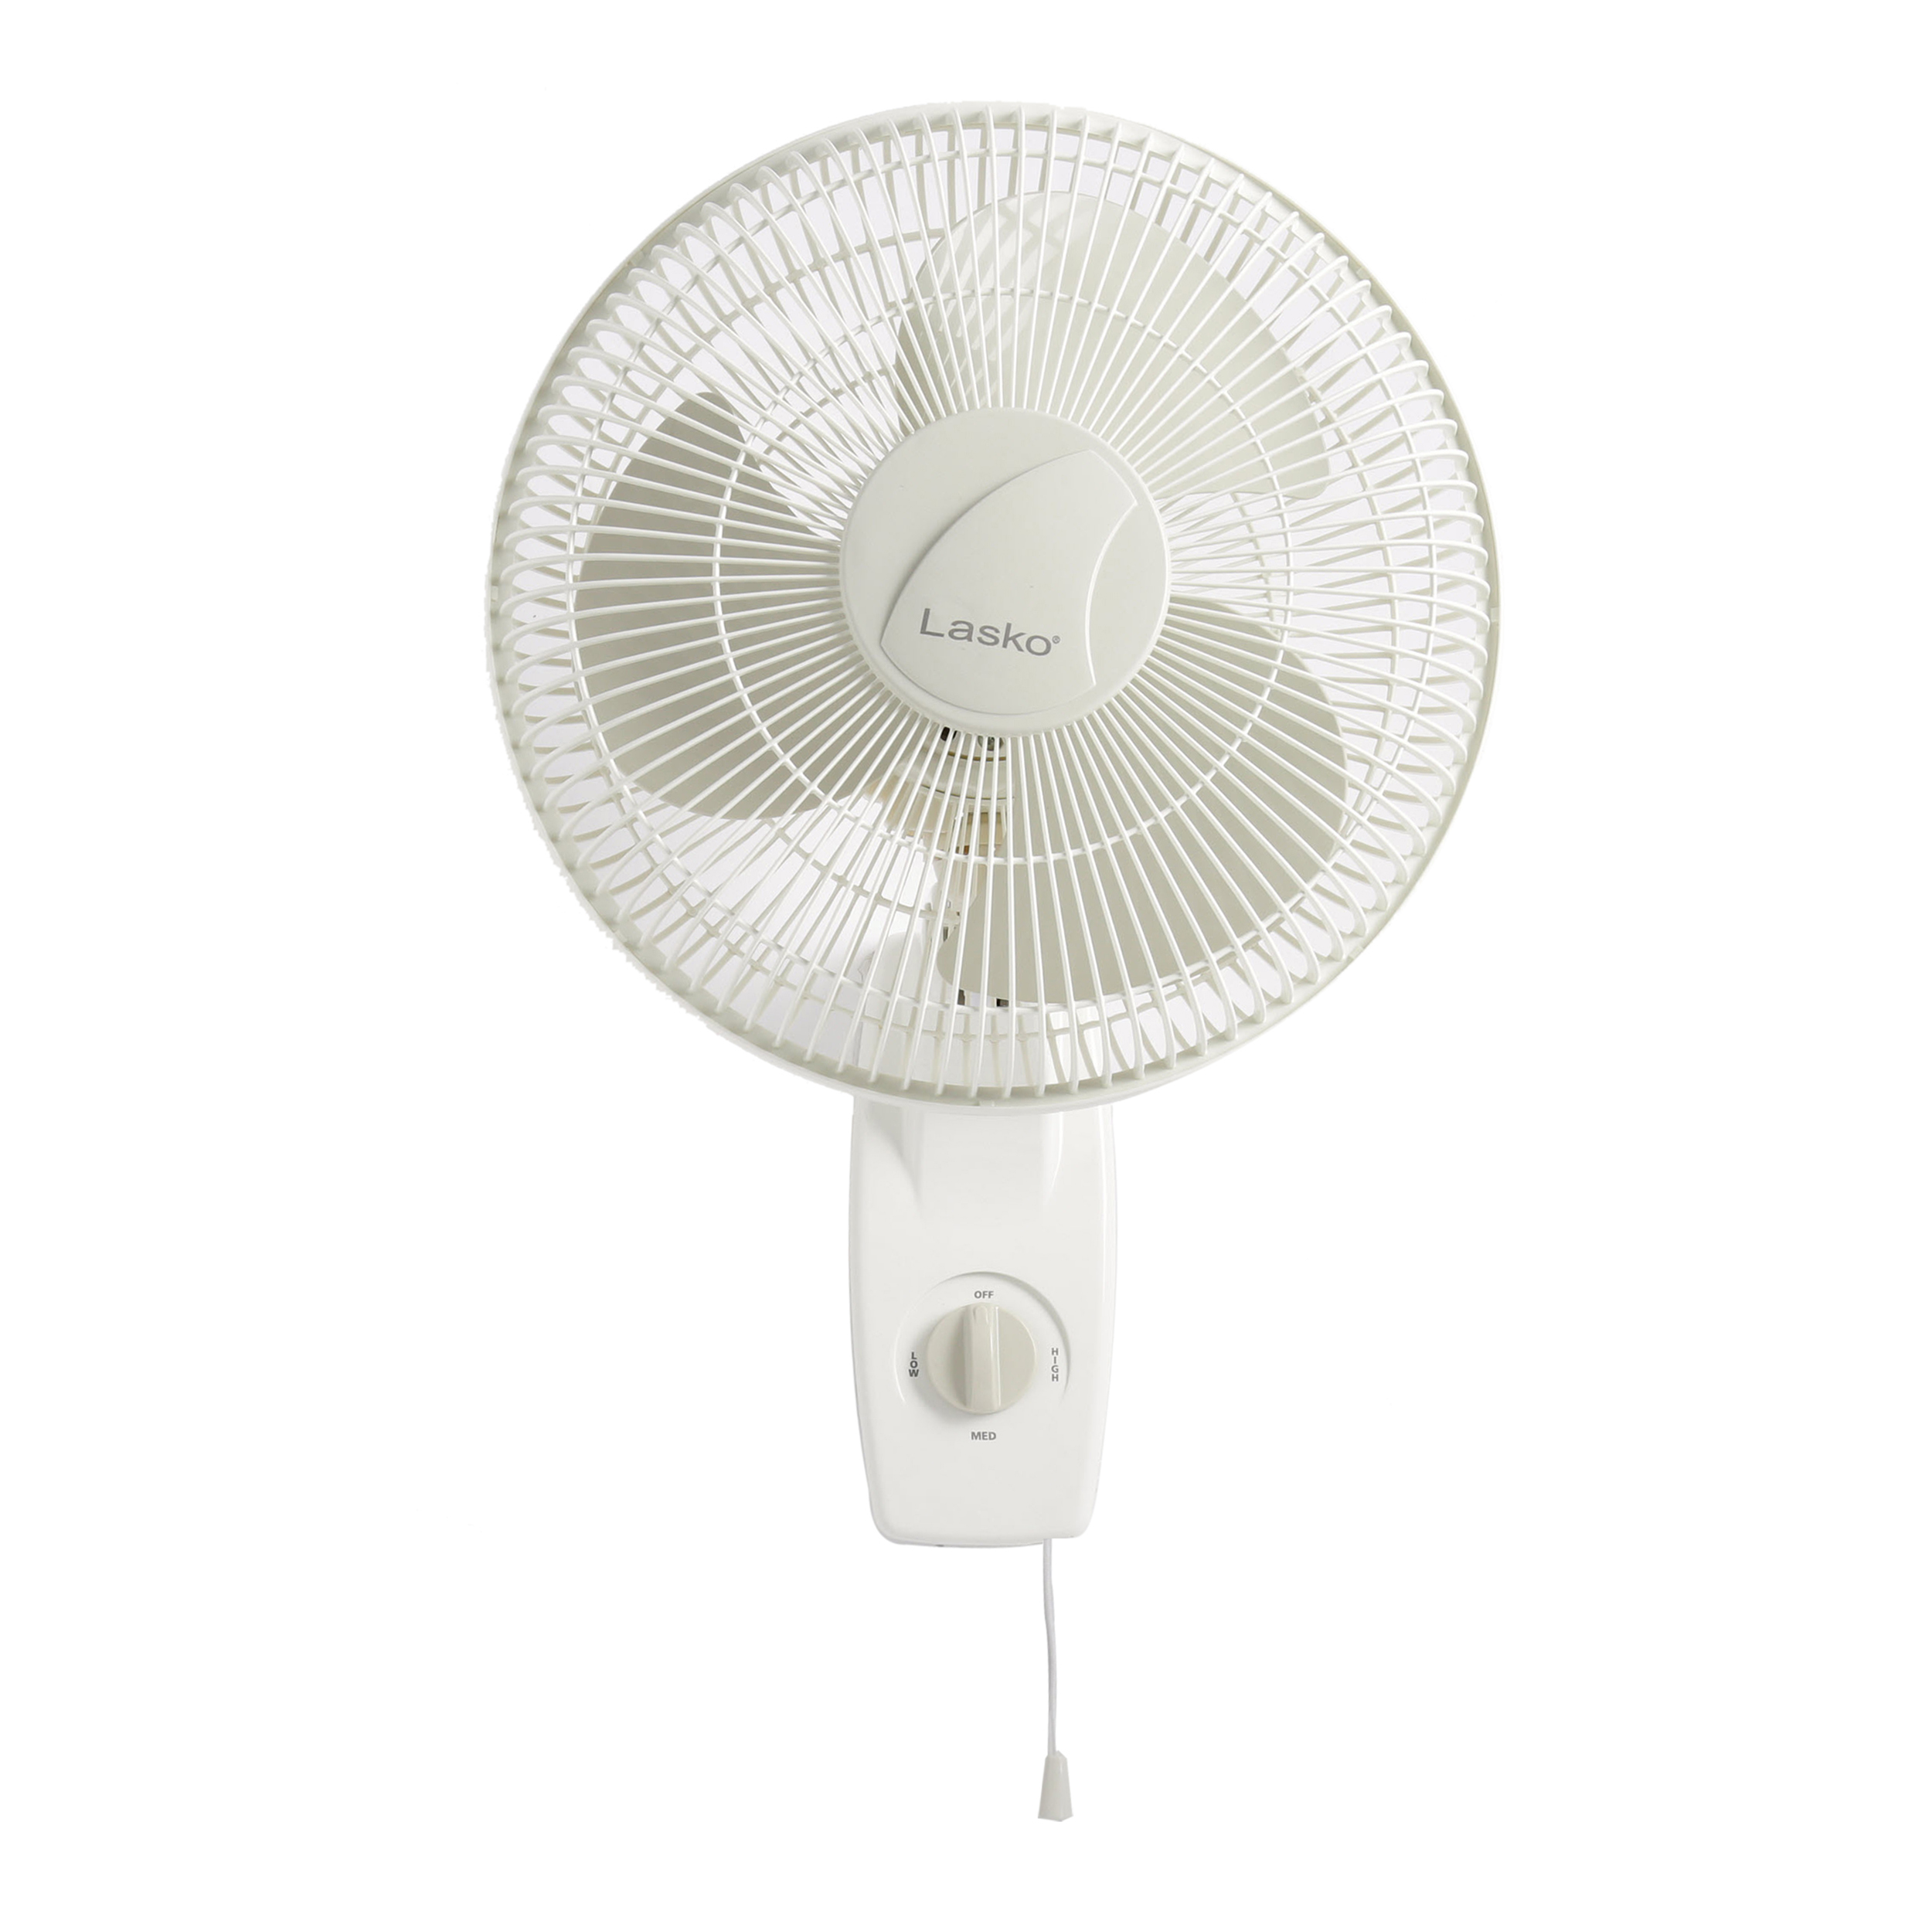 Lasko 12" Oscillating Wall Mount 3-Speed Fan, Model #3012, White - image 1 of 9